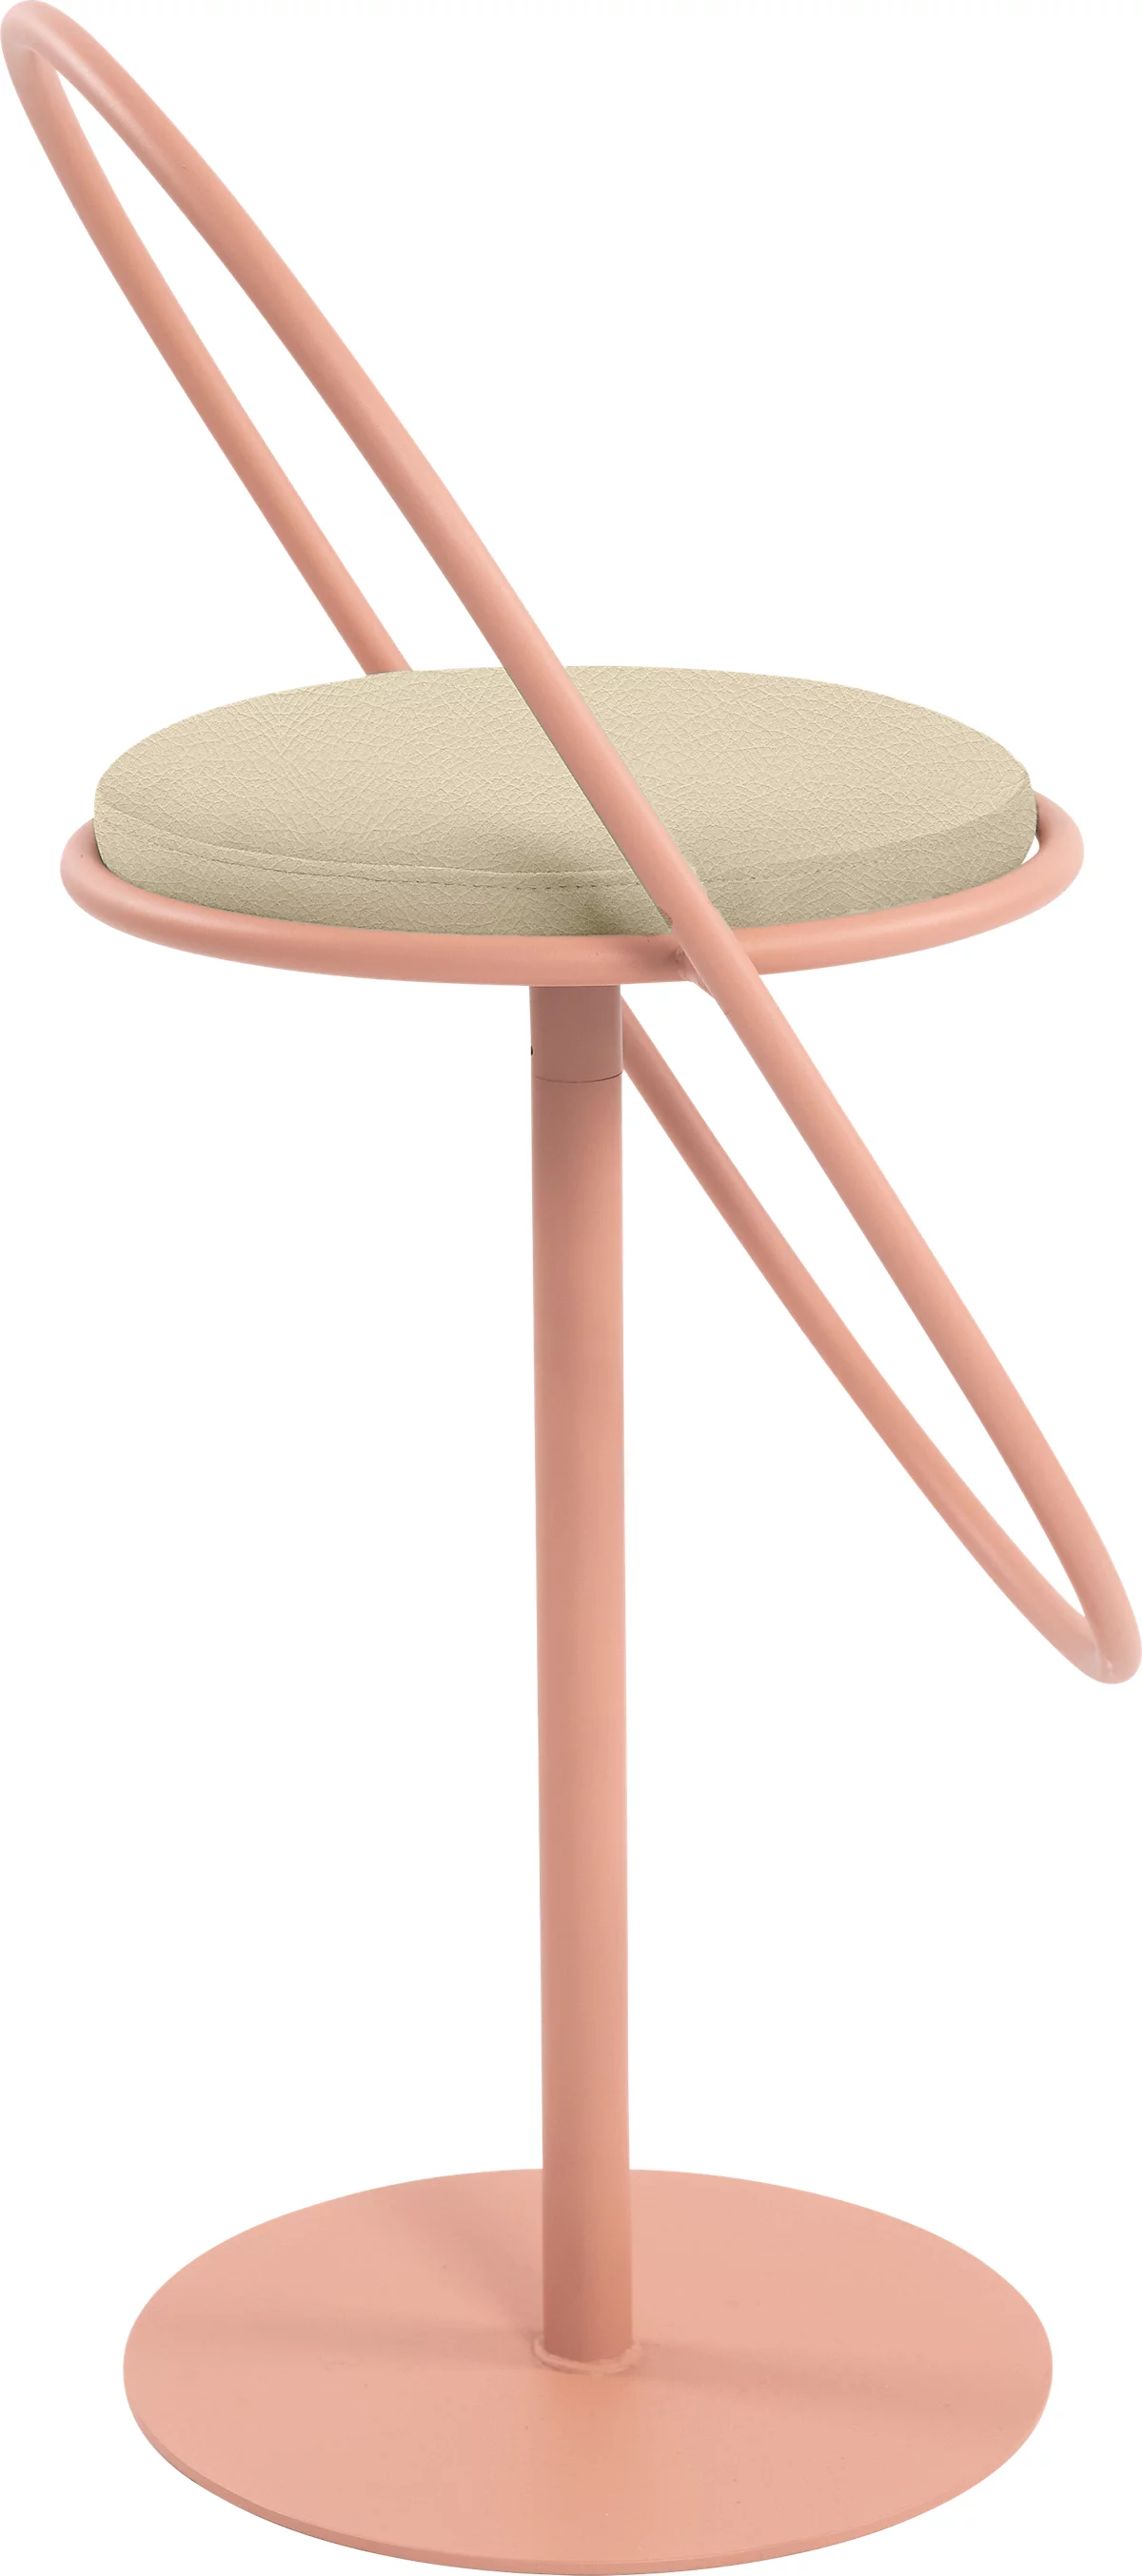 Barhocker Paperflow Saturne, mit Rückenlehne, Sitzhöhe 765 mm, gepolstert, zu 100 % recycelbar, Kunstlederbezug elfenbeinfarben, Gestell rosa